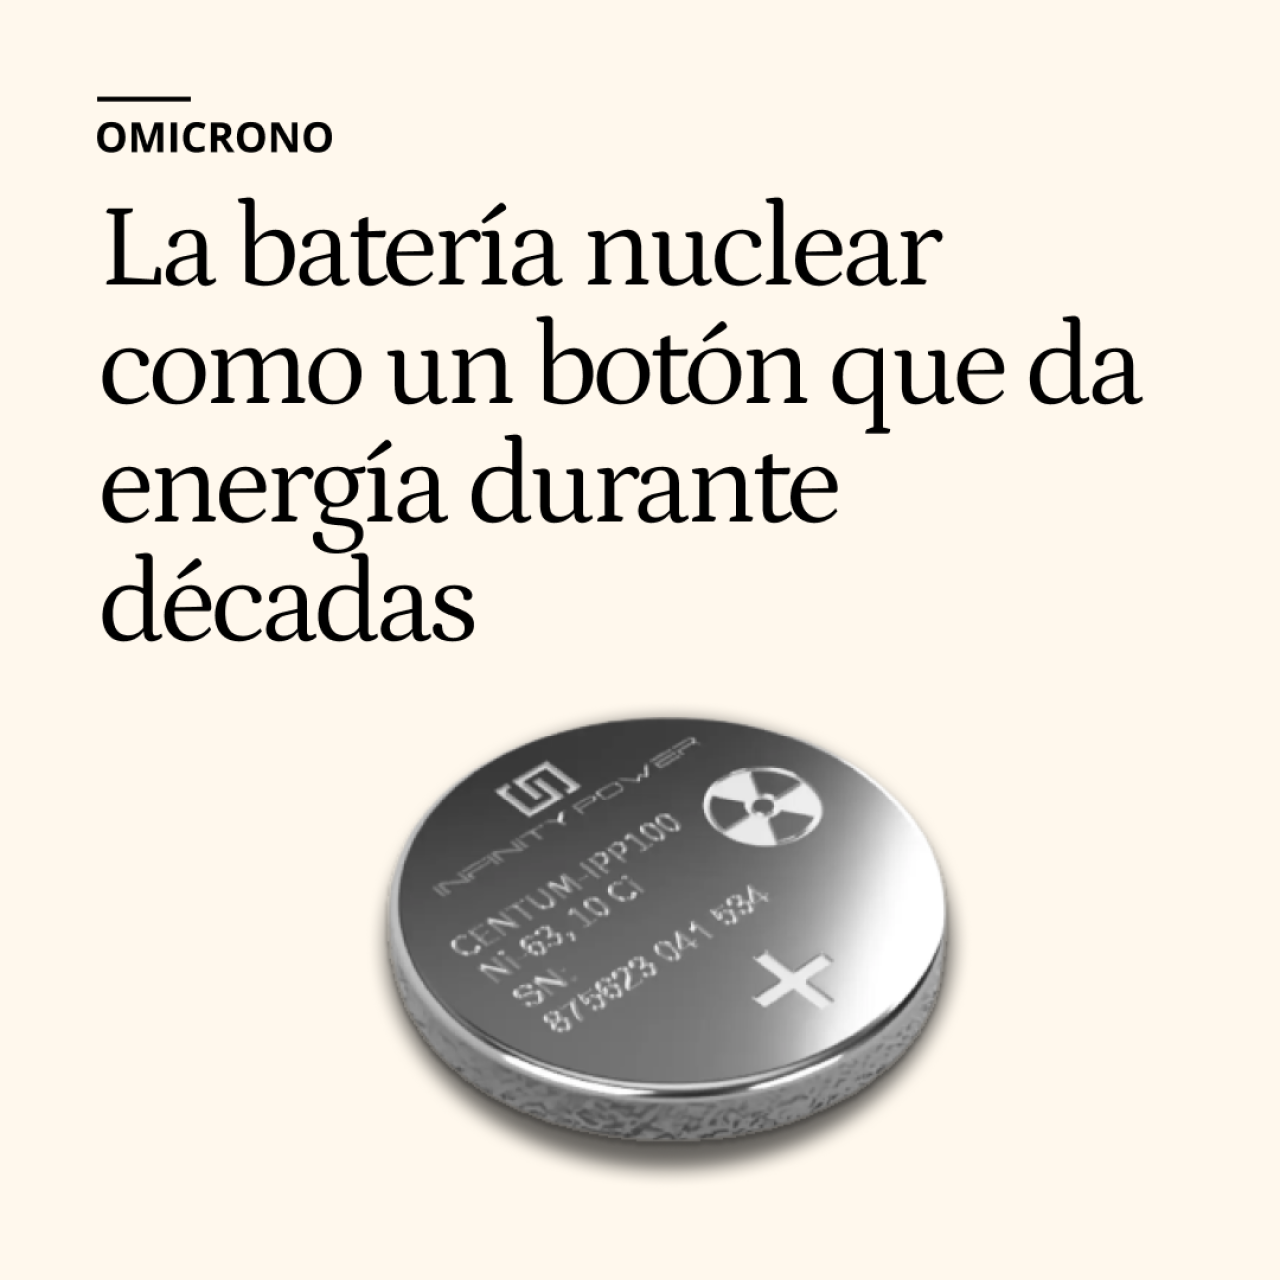 Esta diminuta batería nuclear del tamaño de una pila de botón promete energía durante décadas